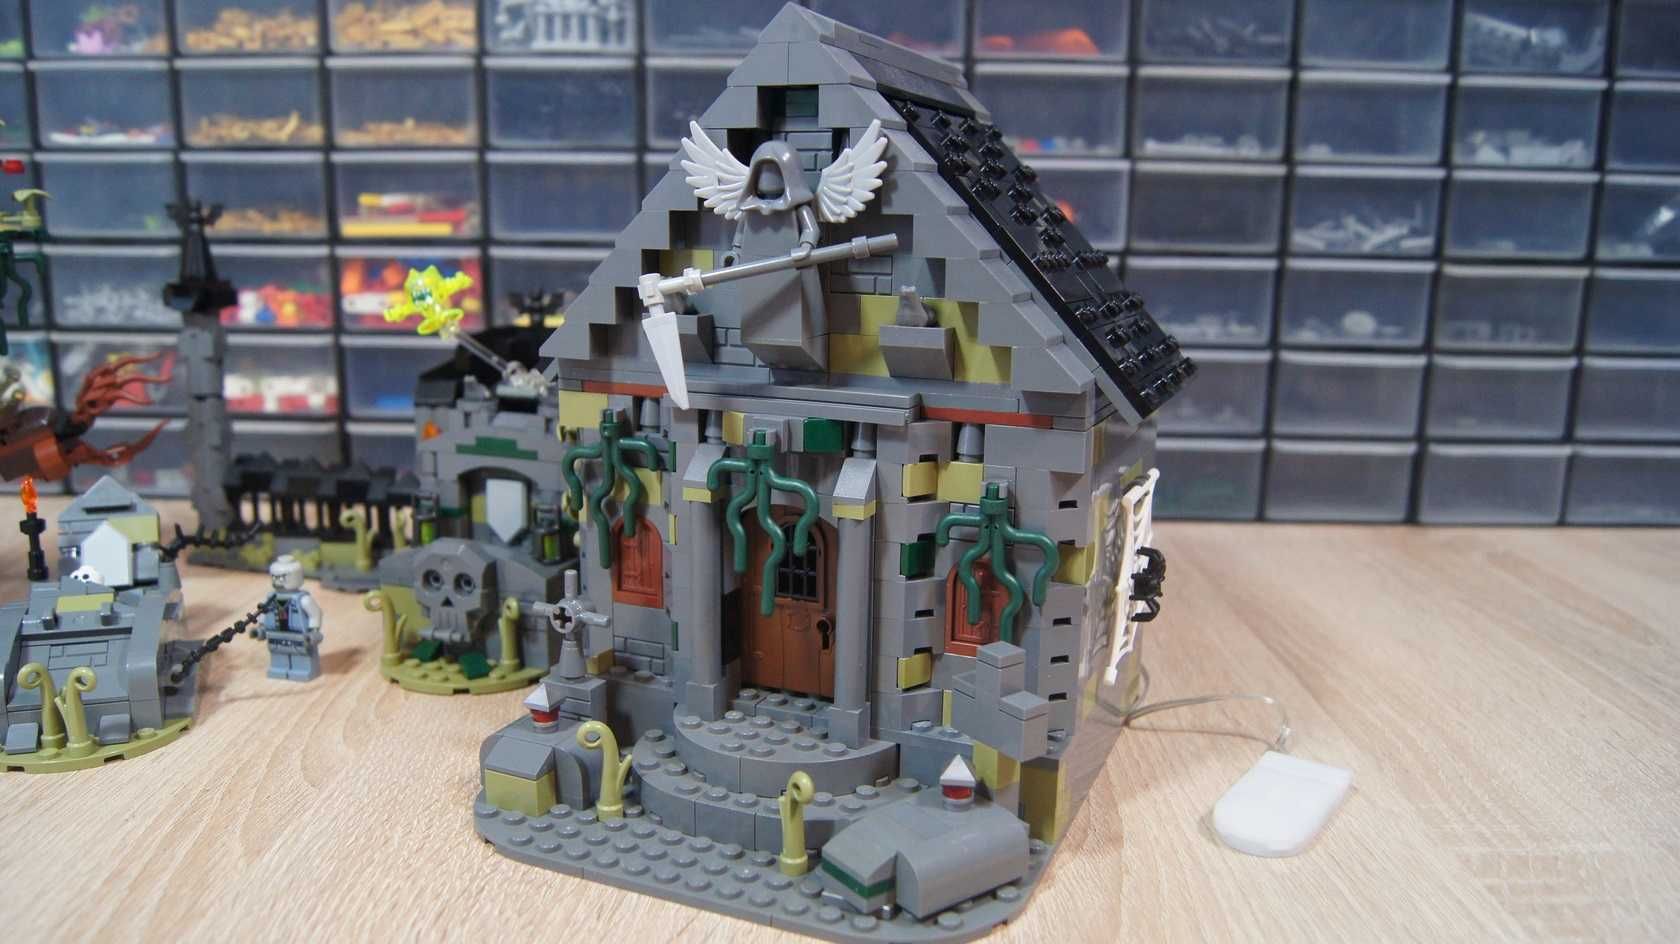 Lego Cmentarz MOC Halloween Graveyard krypta szkielet figurki kg